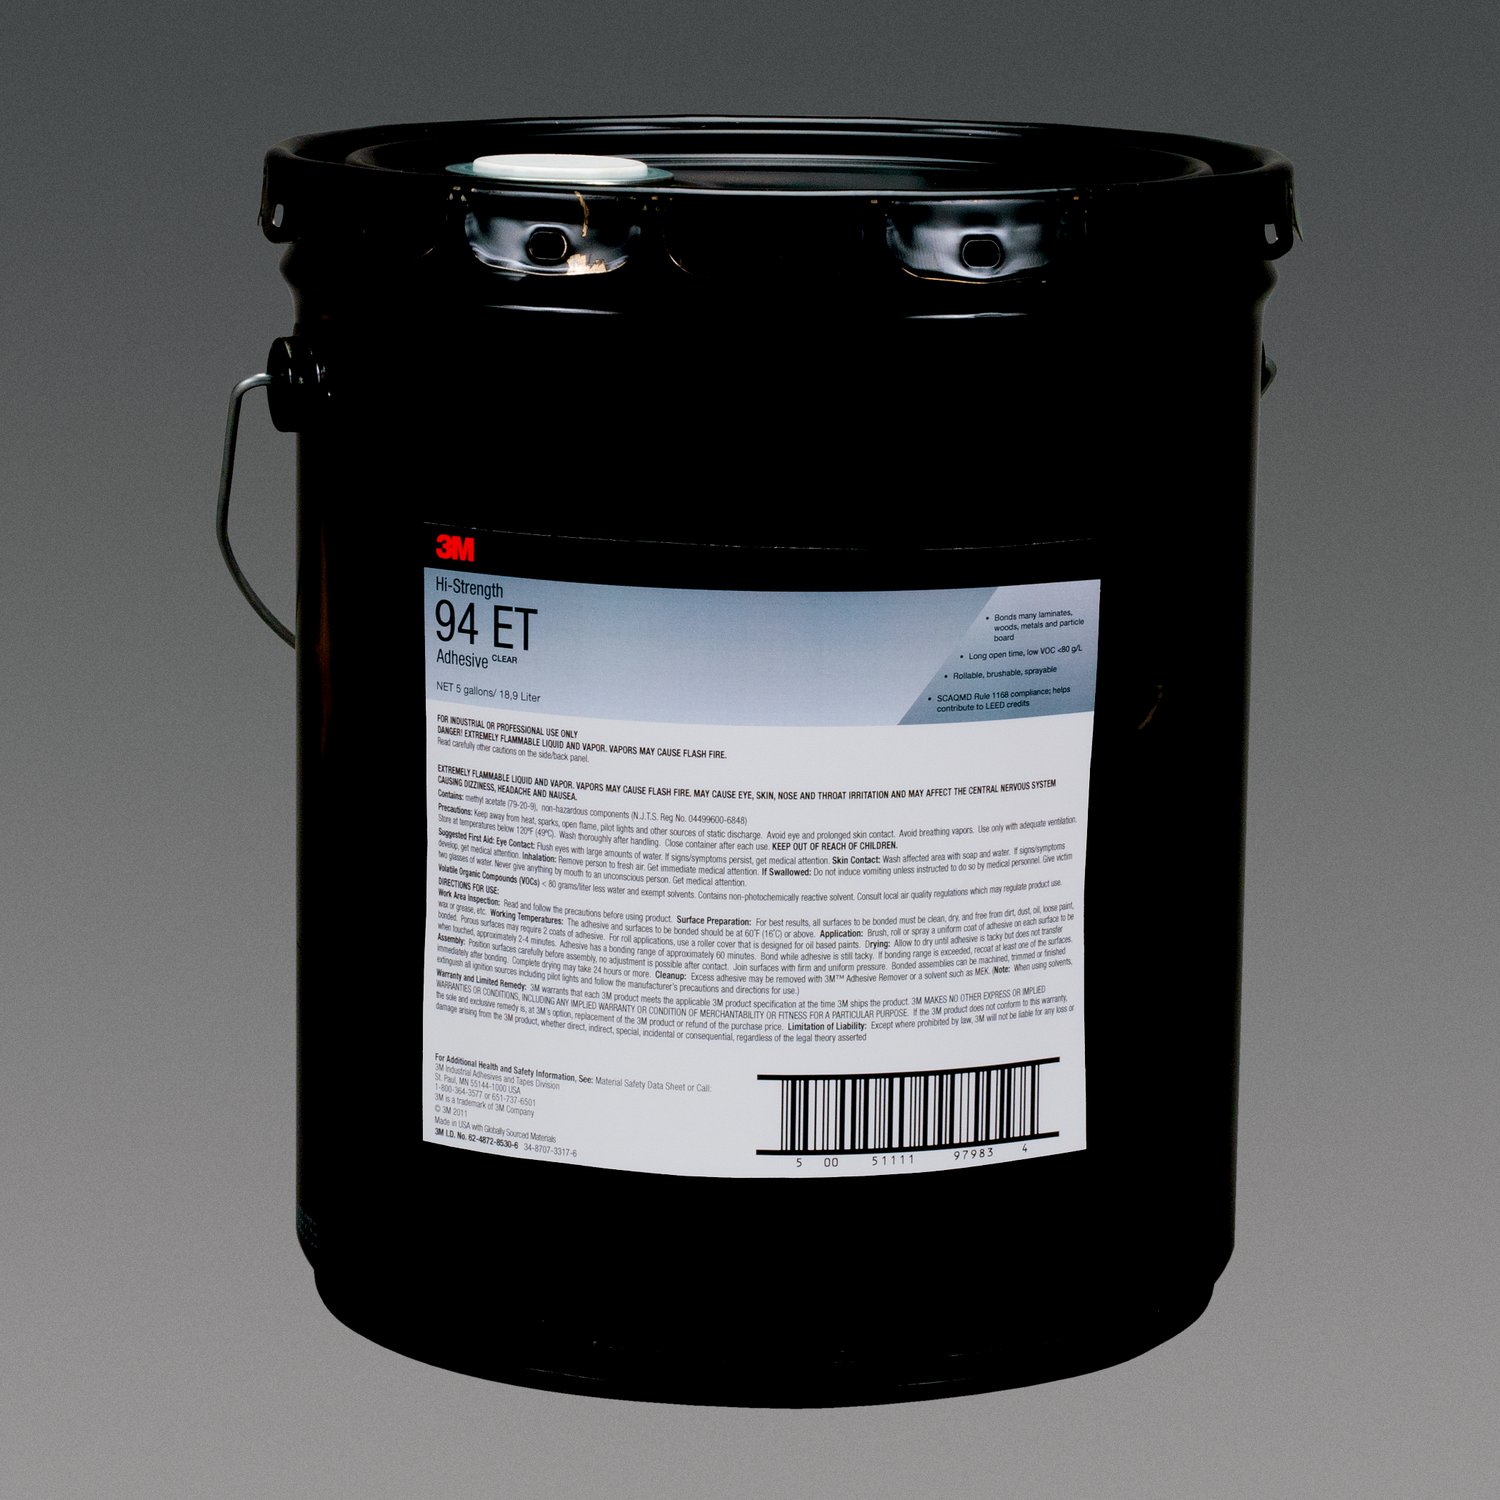 7100022993 - 3M Hi-Strength 94 ET Adhesive, Clear, 5 Gallon Drum (Pail)